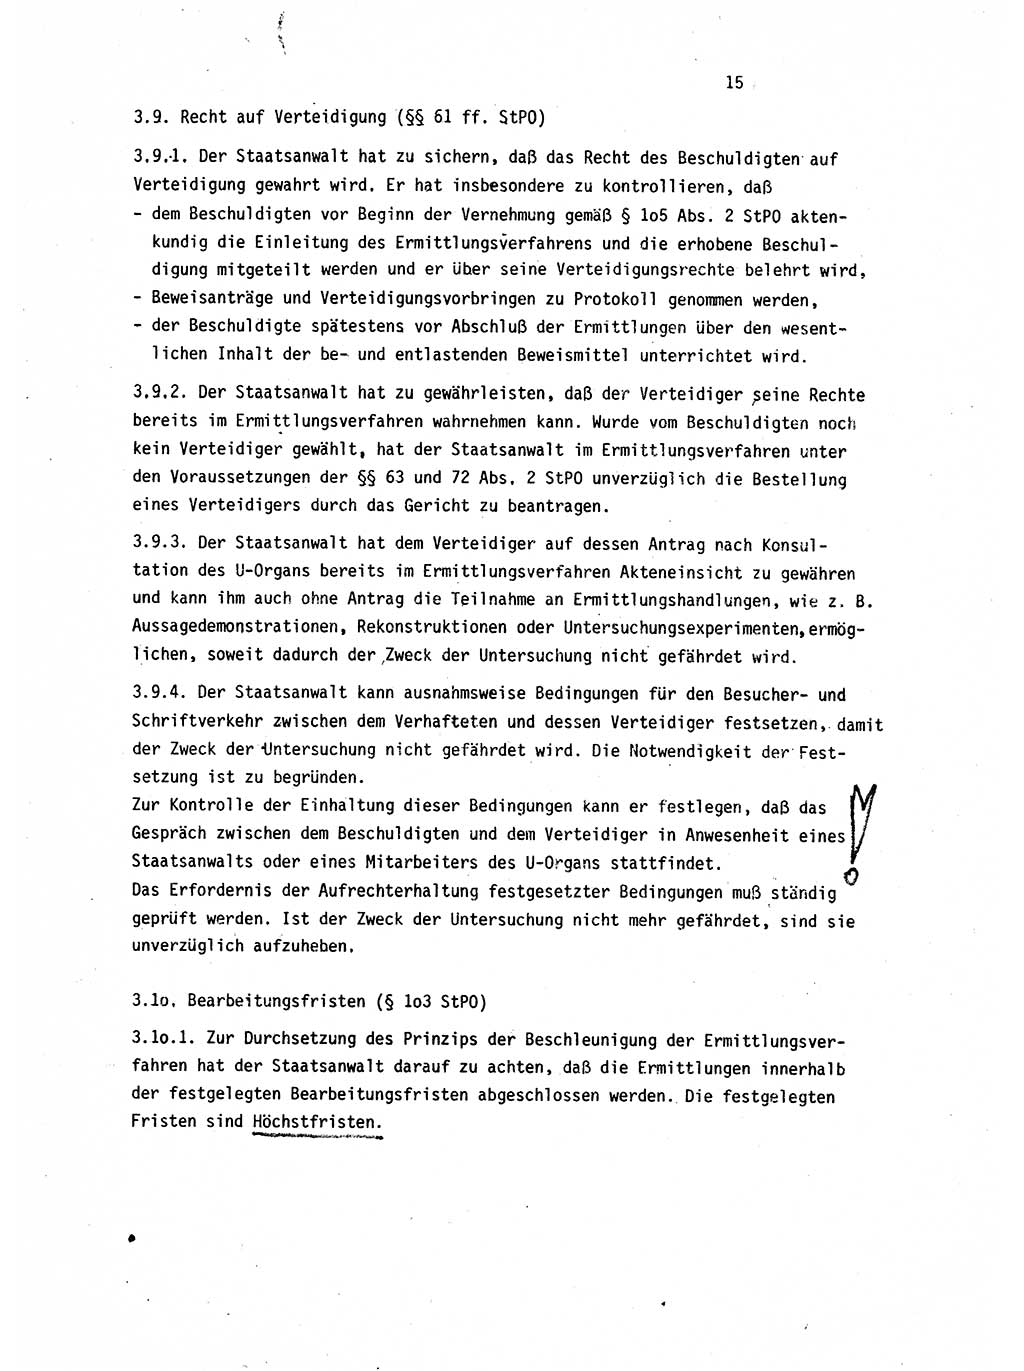 Leitung des Ermittlungsverfahren (EV) durch den Staatsanwalt [Deutsche Demokratische Republik (DDR)] 1985, Seite 15 (Ltg. EV StA DDR 1985, S. 15)